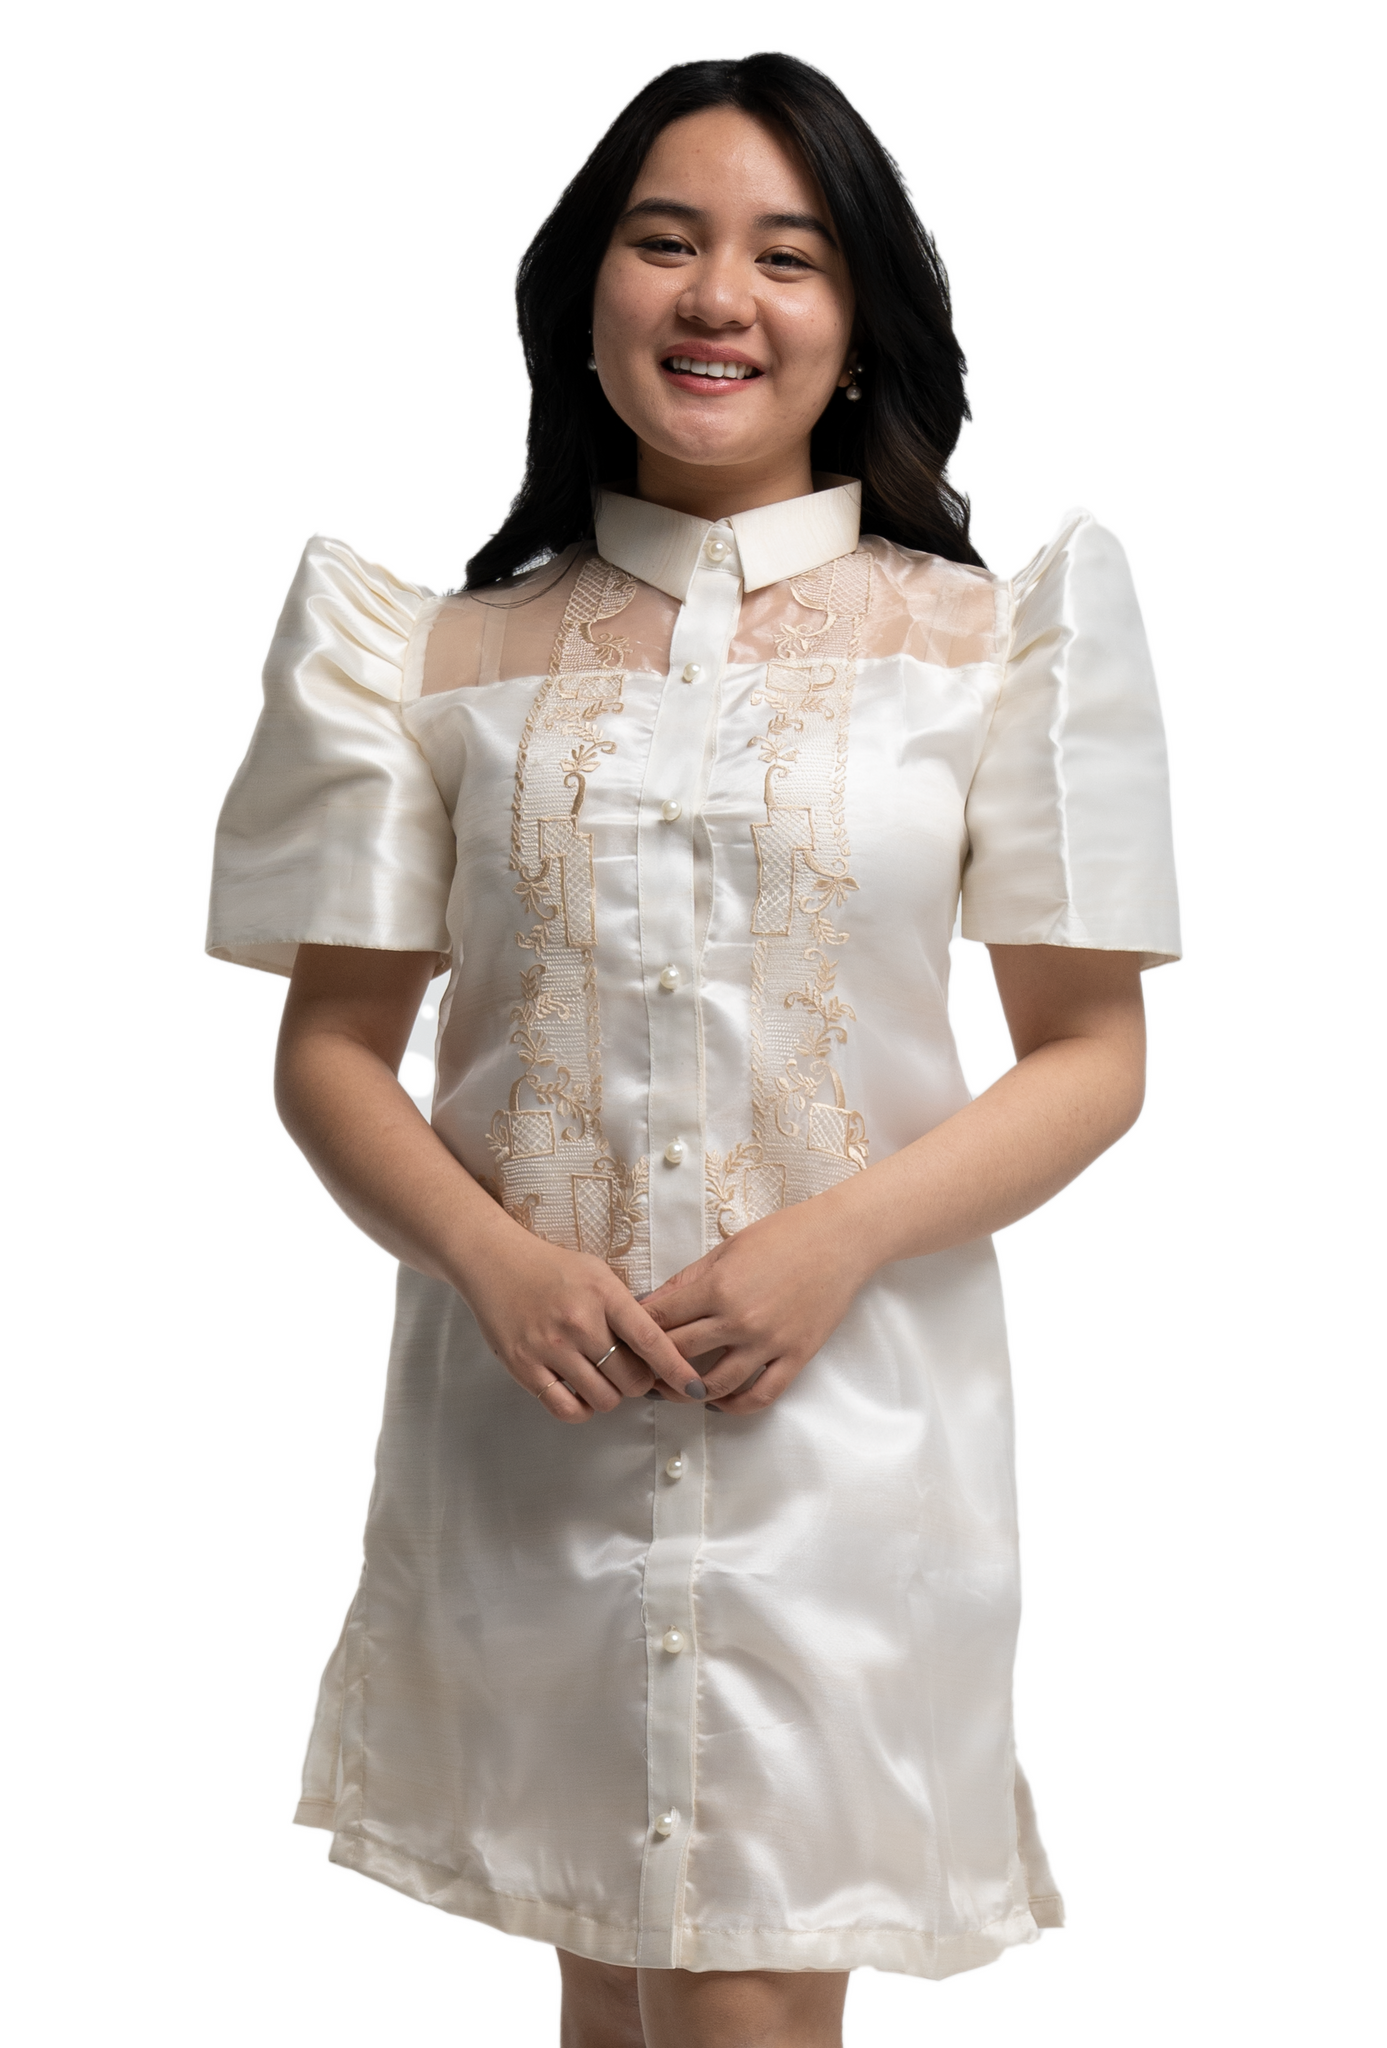 Filipiniana Organza Barong Dress